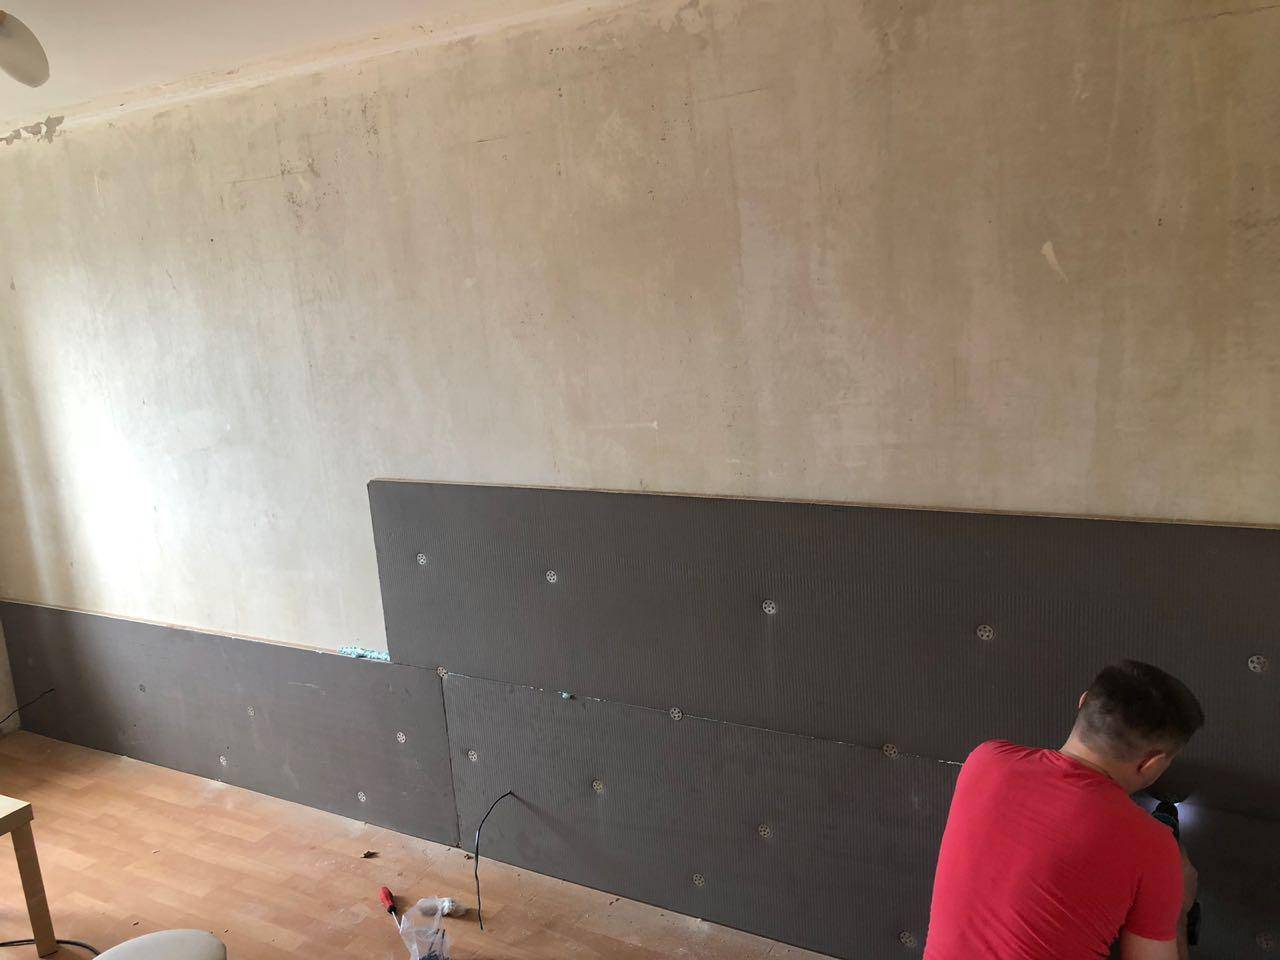 Шумоизоляция стены в квартире от соседей – как сделать звукоизоляцию сбоку и какие материалы понадобятся, чтобы осуществить все своими руками?